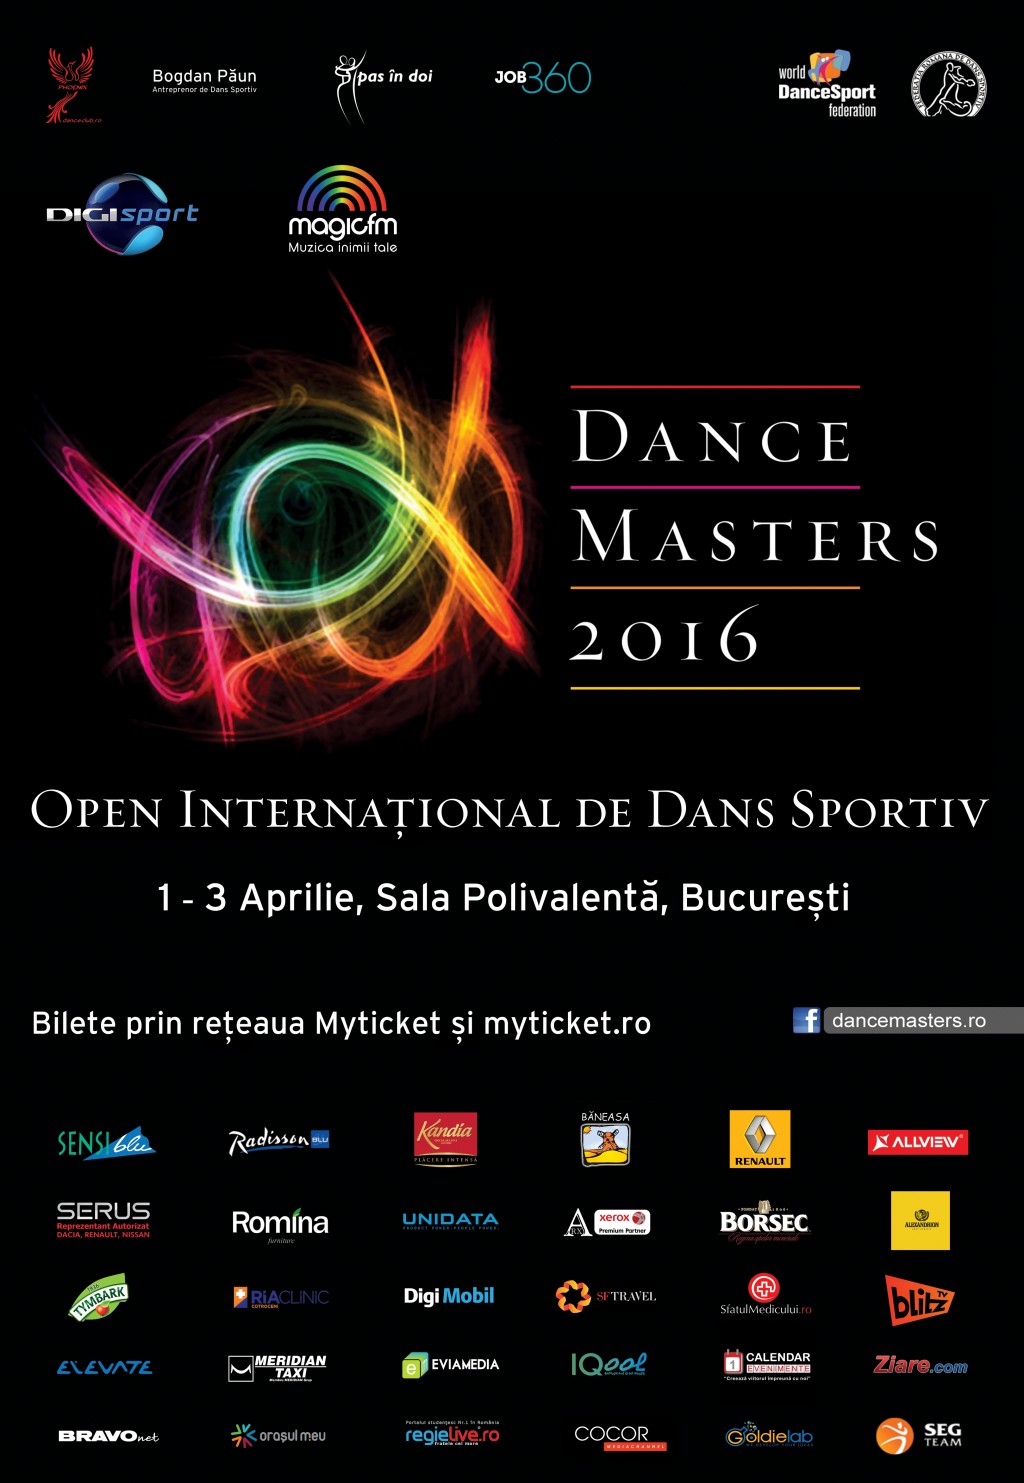 DanceMasters 2016. A 13-a ediție a celui mai important concurs internațional de dans sportiv din România